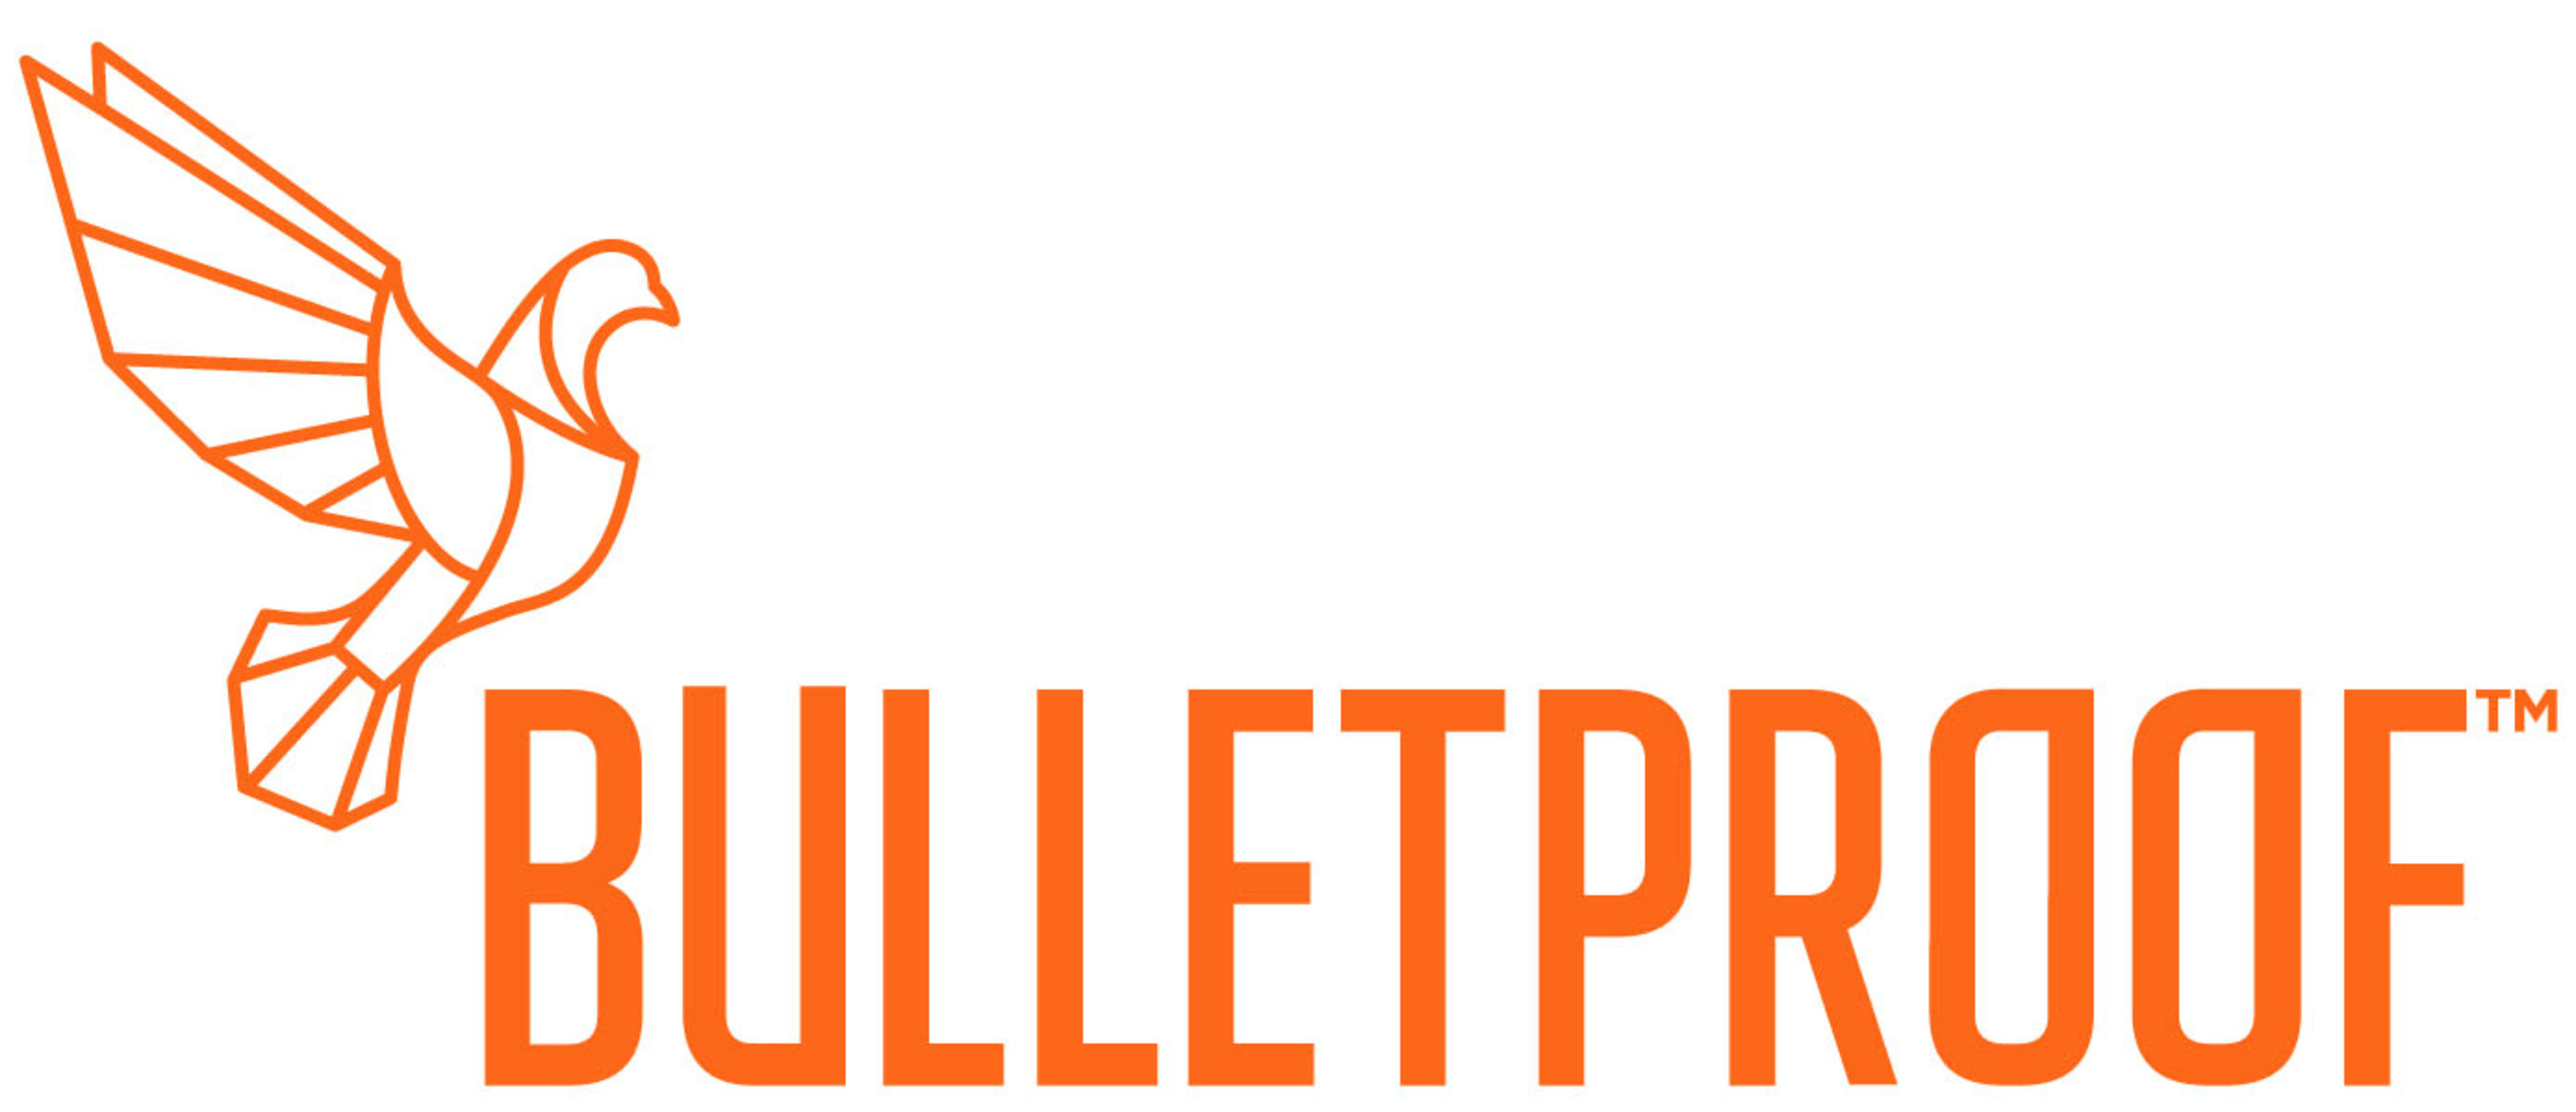 Image result for bulletproof logo